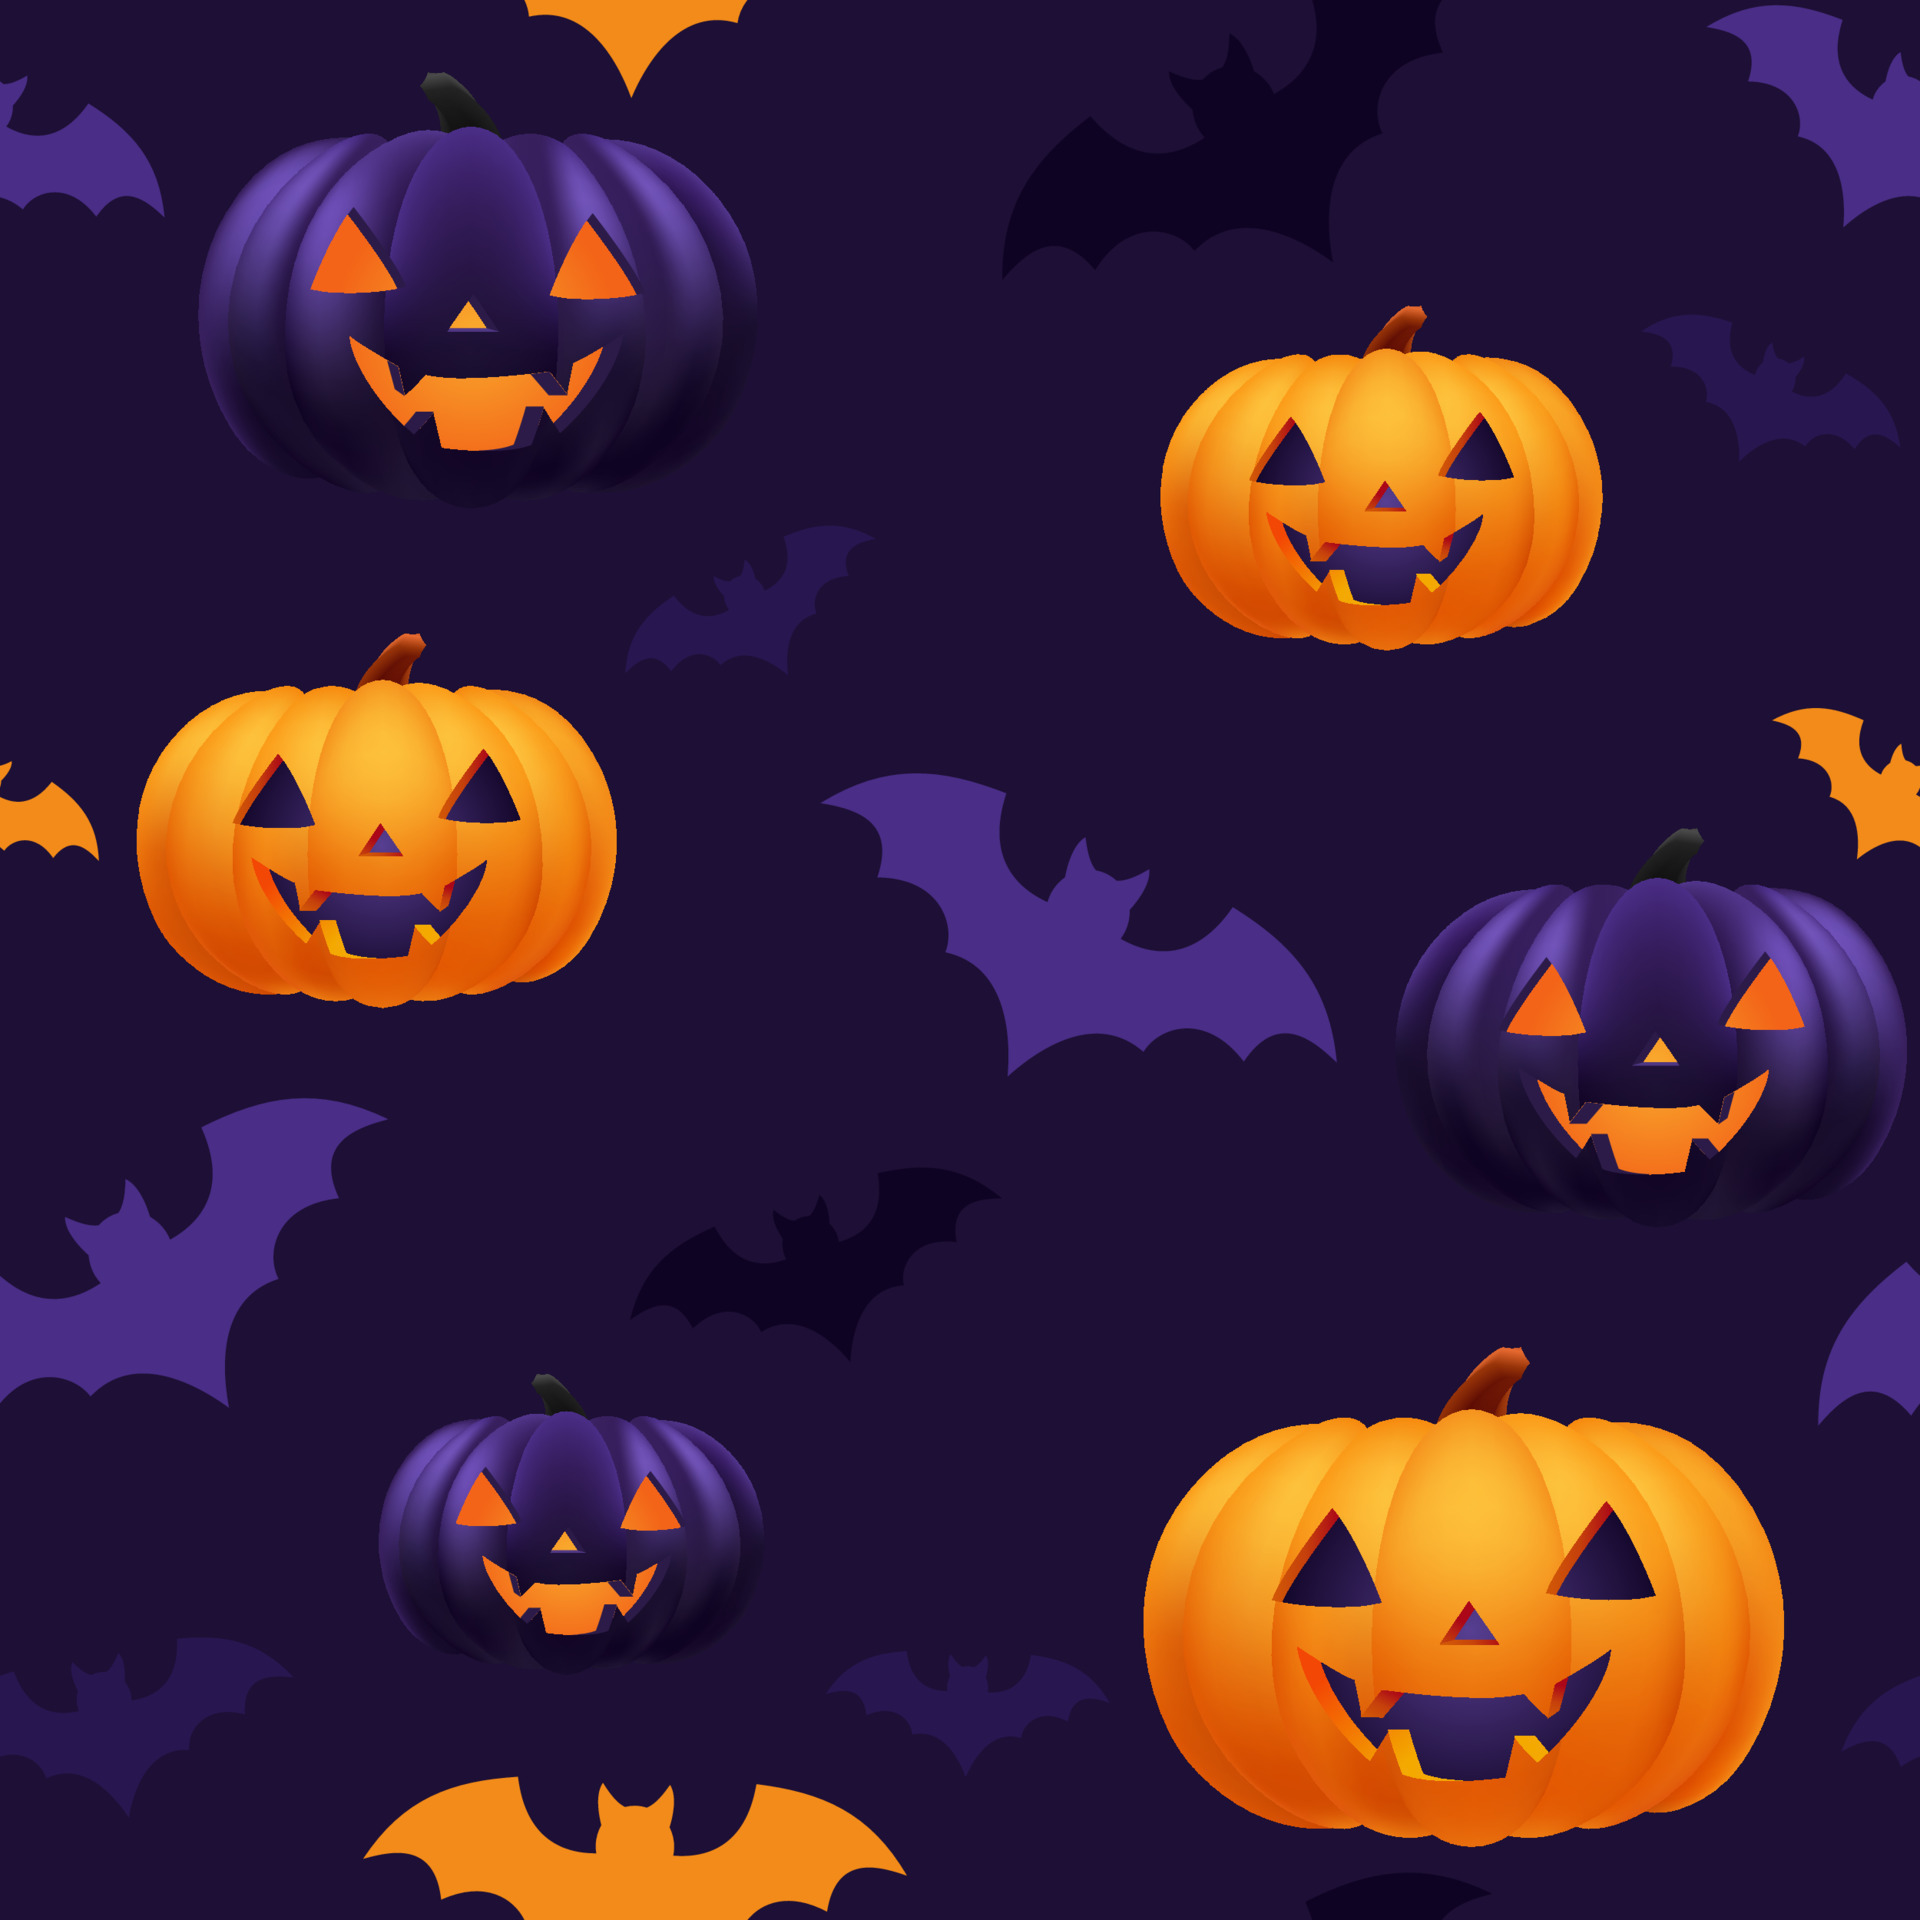 Mùa Halloween năm nay sẽ càng thêm phần lôi cuốn với hình ảnh về màu tím. Hãy xem bức ảnh liên quan đến chủ đề Halloween màu tím này để cảm nhận rõ hơn sự kỳ bí và sợ hãi trong bầu không khí ngày lễ.